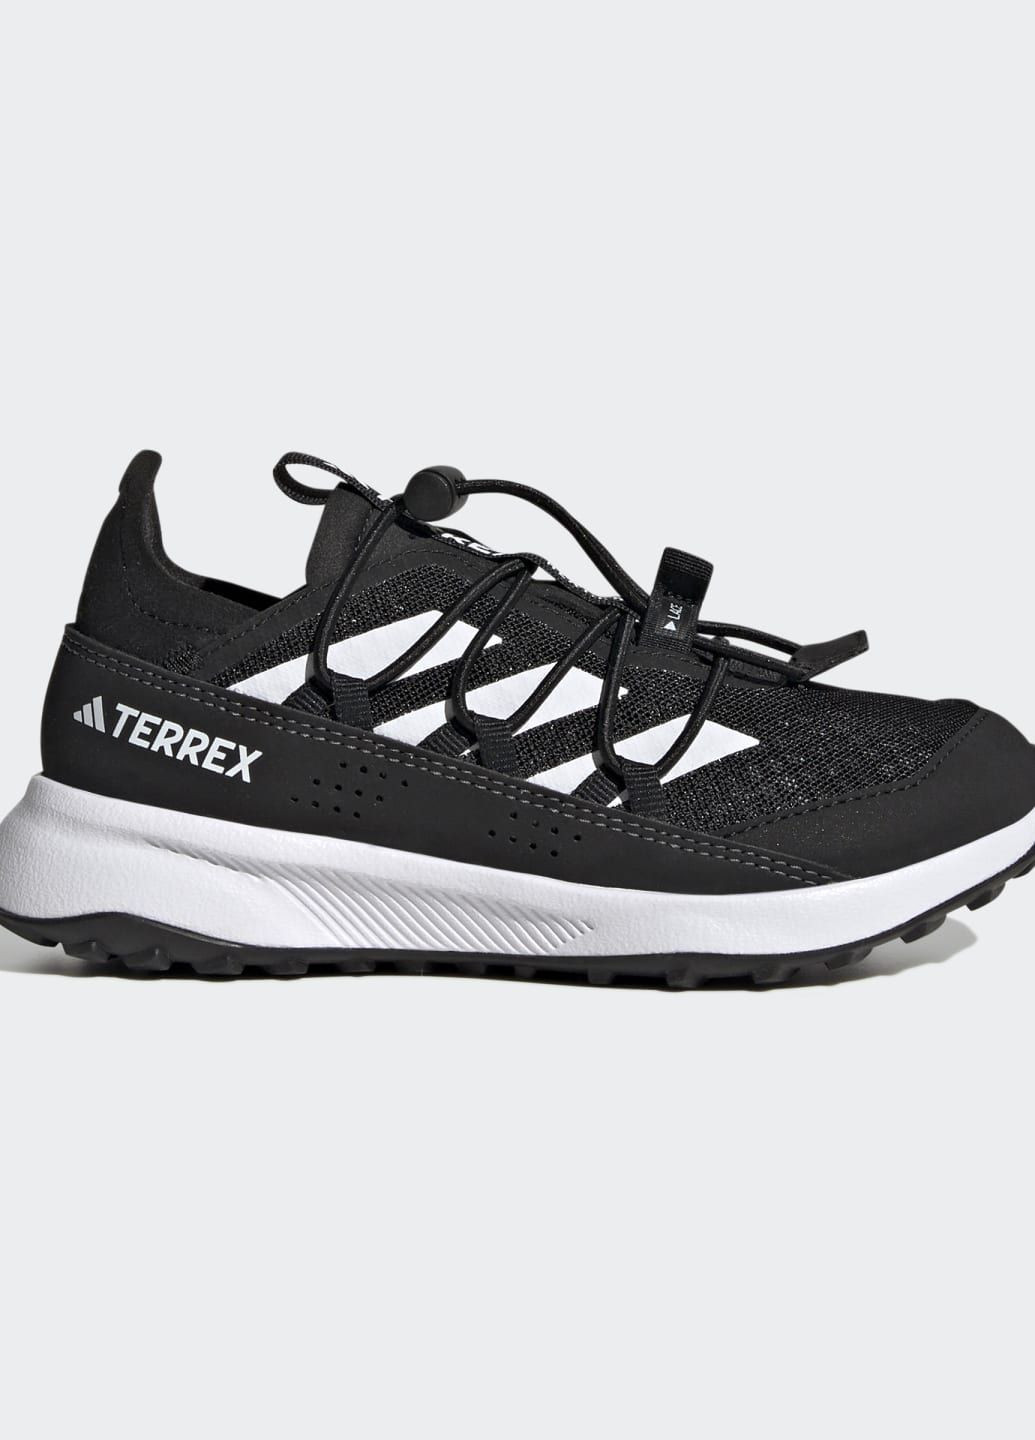 Чорні всесезонні туристичні кросівки terrex voyager 21 heat.rdy adidas